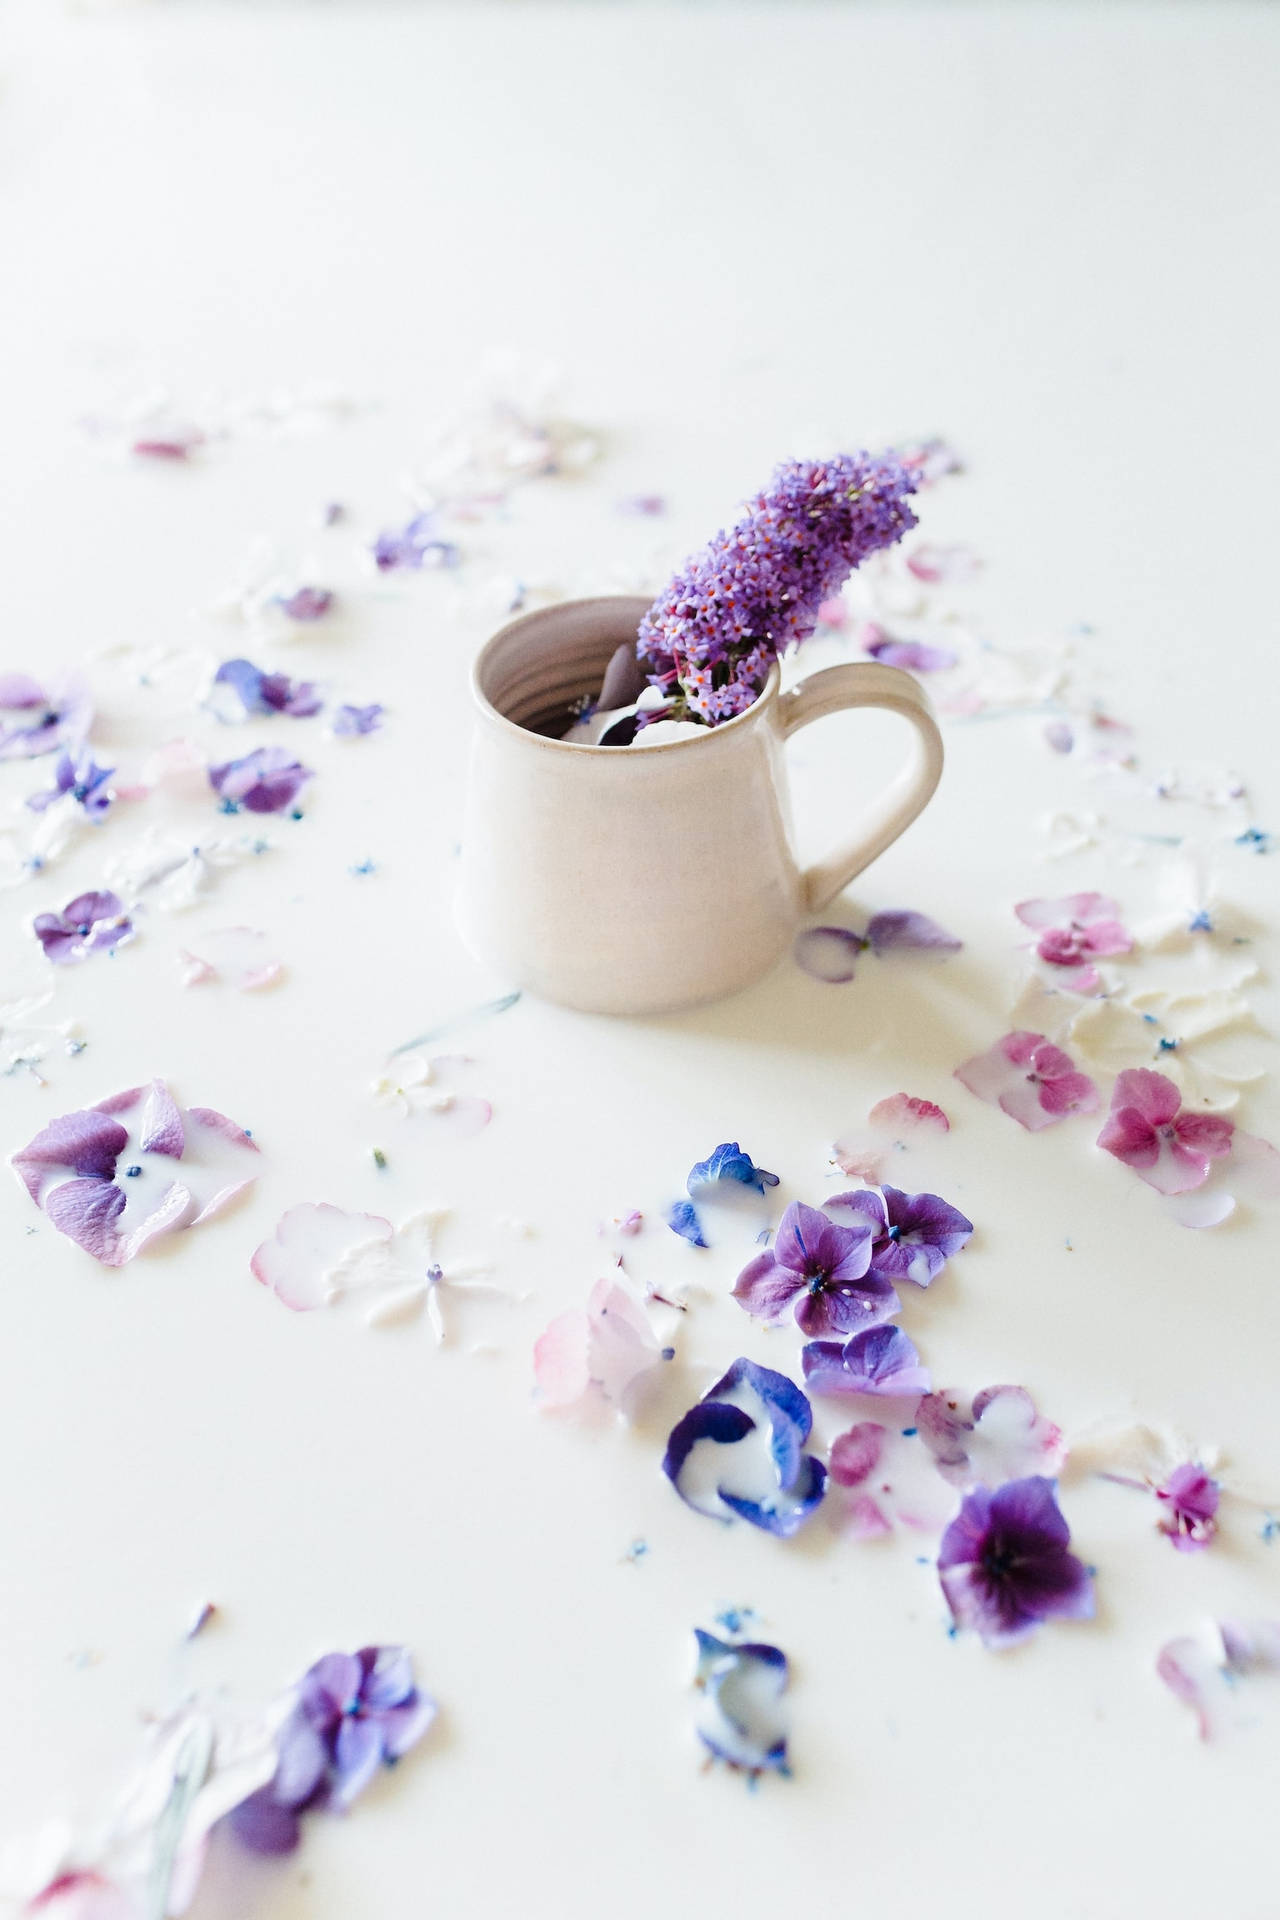 Aesthetic Purple Flowers Inside White Ceramic Mug Wallpaper